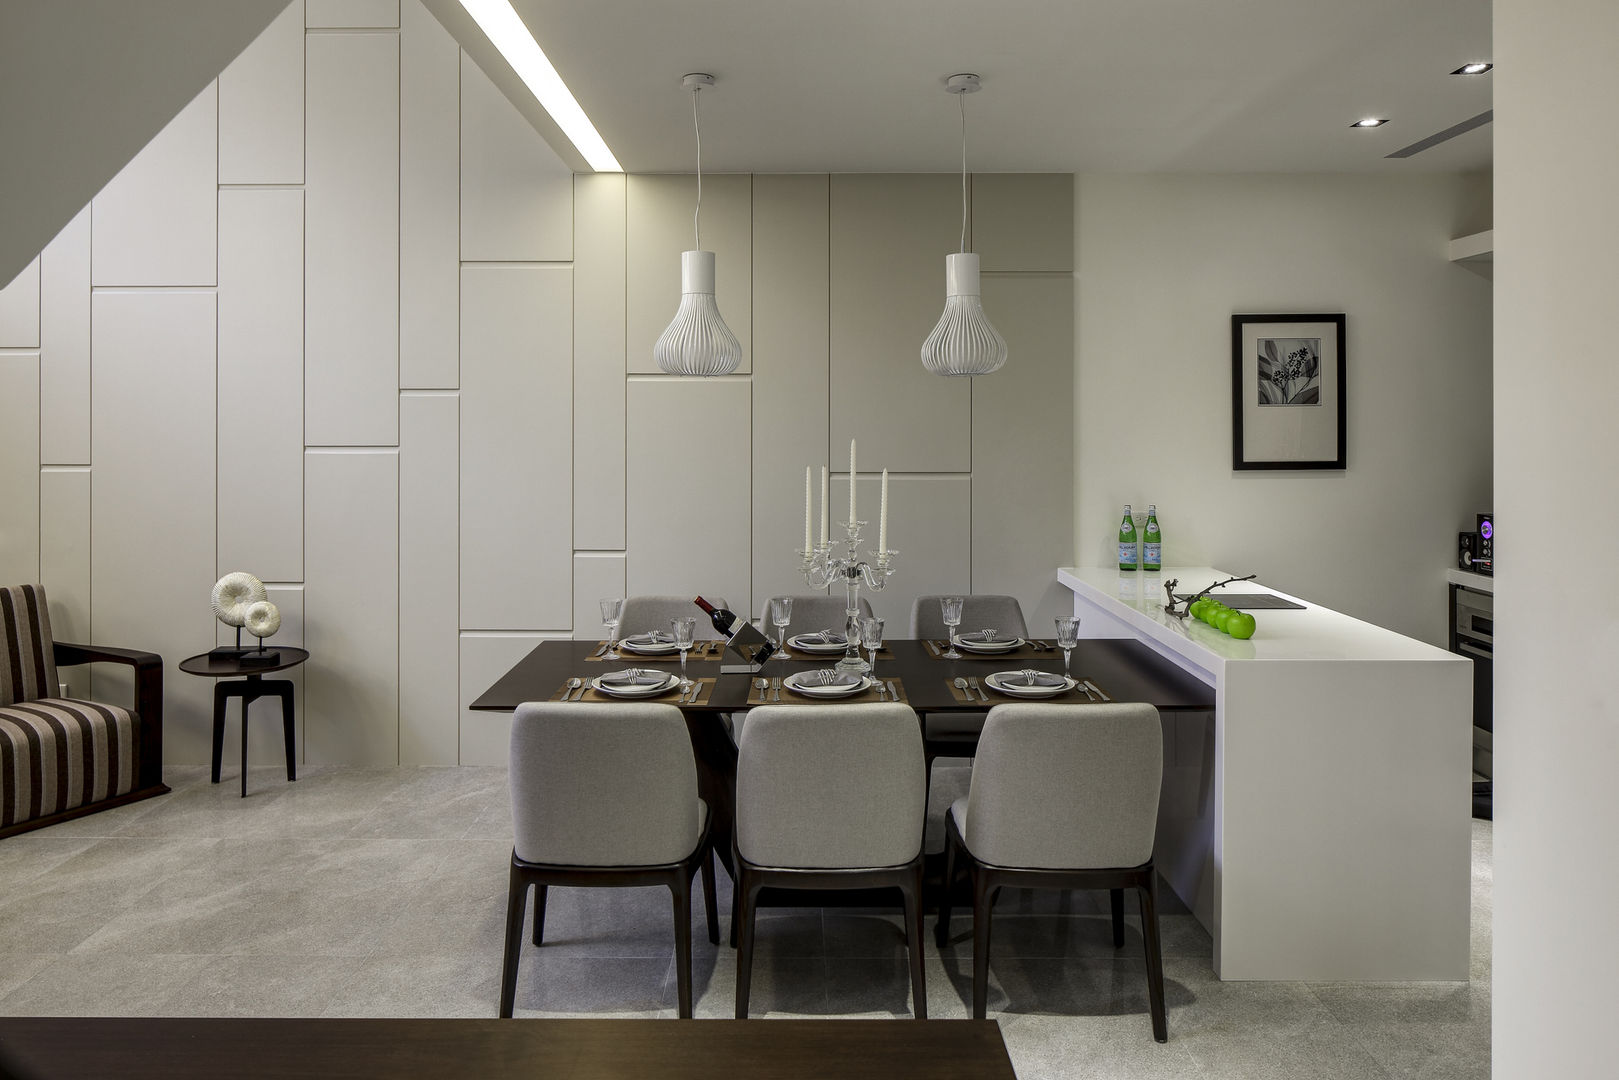 三代同堂度假別墅 大荷室內裝修設計工程有限公司 Modern dining room